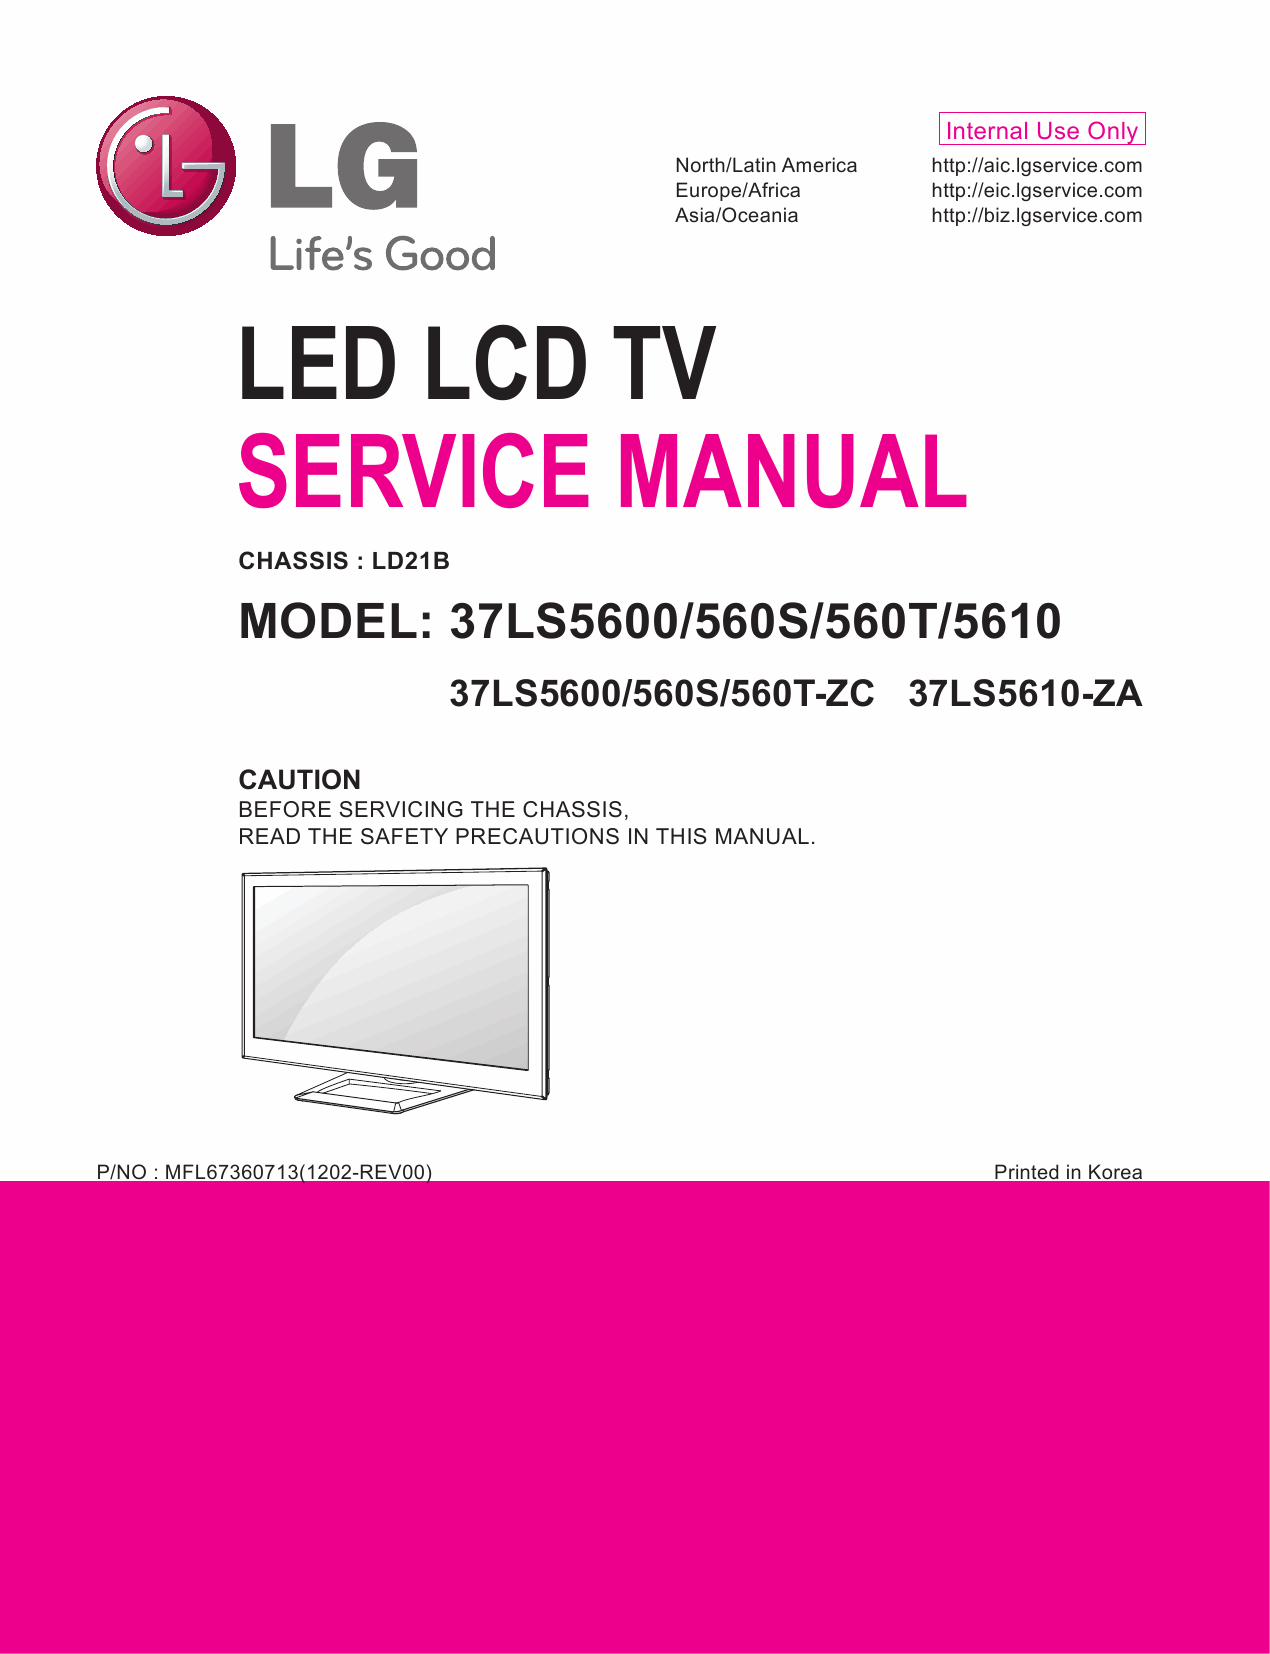 LG_LED_TV_37LS5600_560S_560T_5610_Service_Manual_2012_Qmanual.com-1